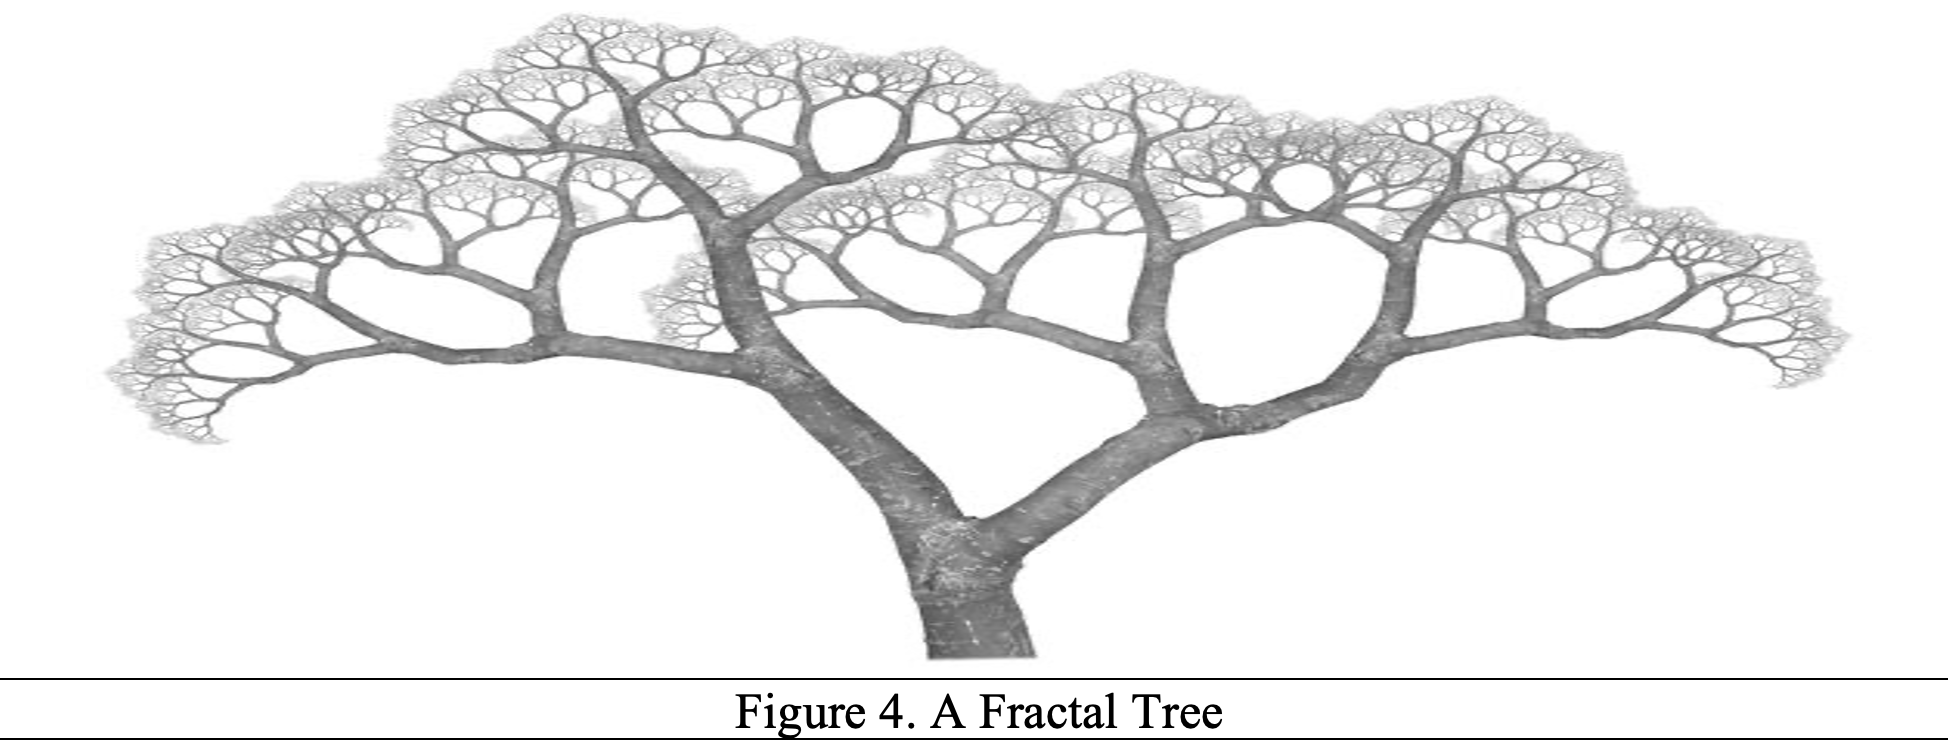 A Fractal Tree